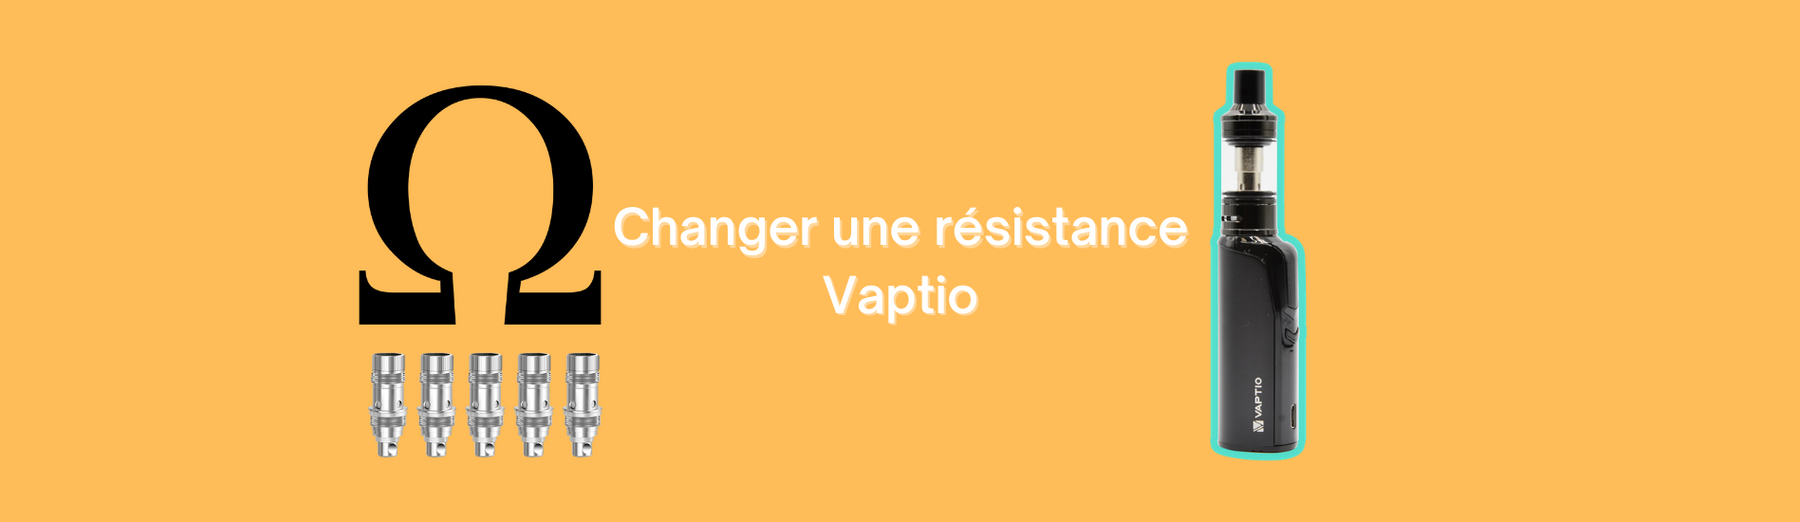 Comment changer une résistance Vaptio ?